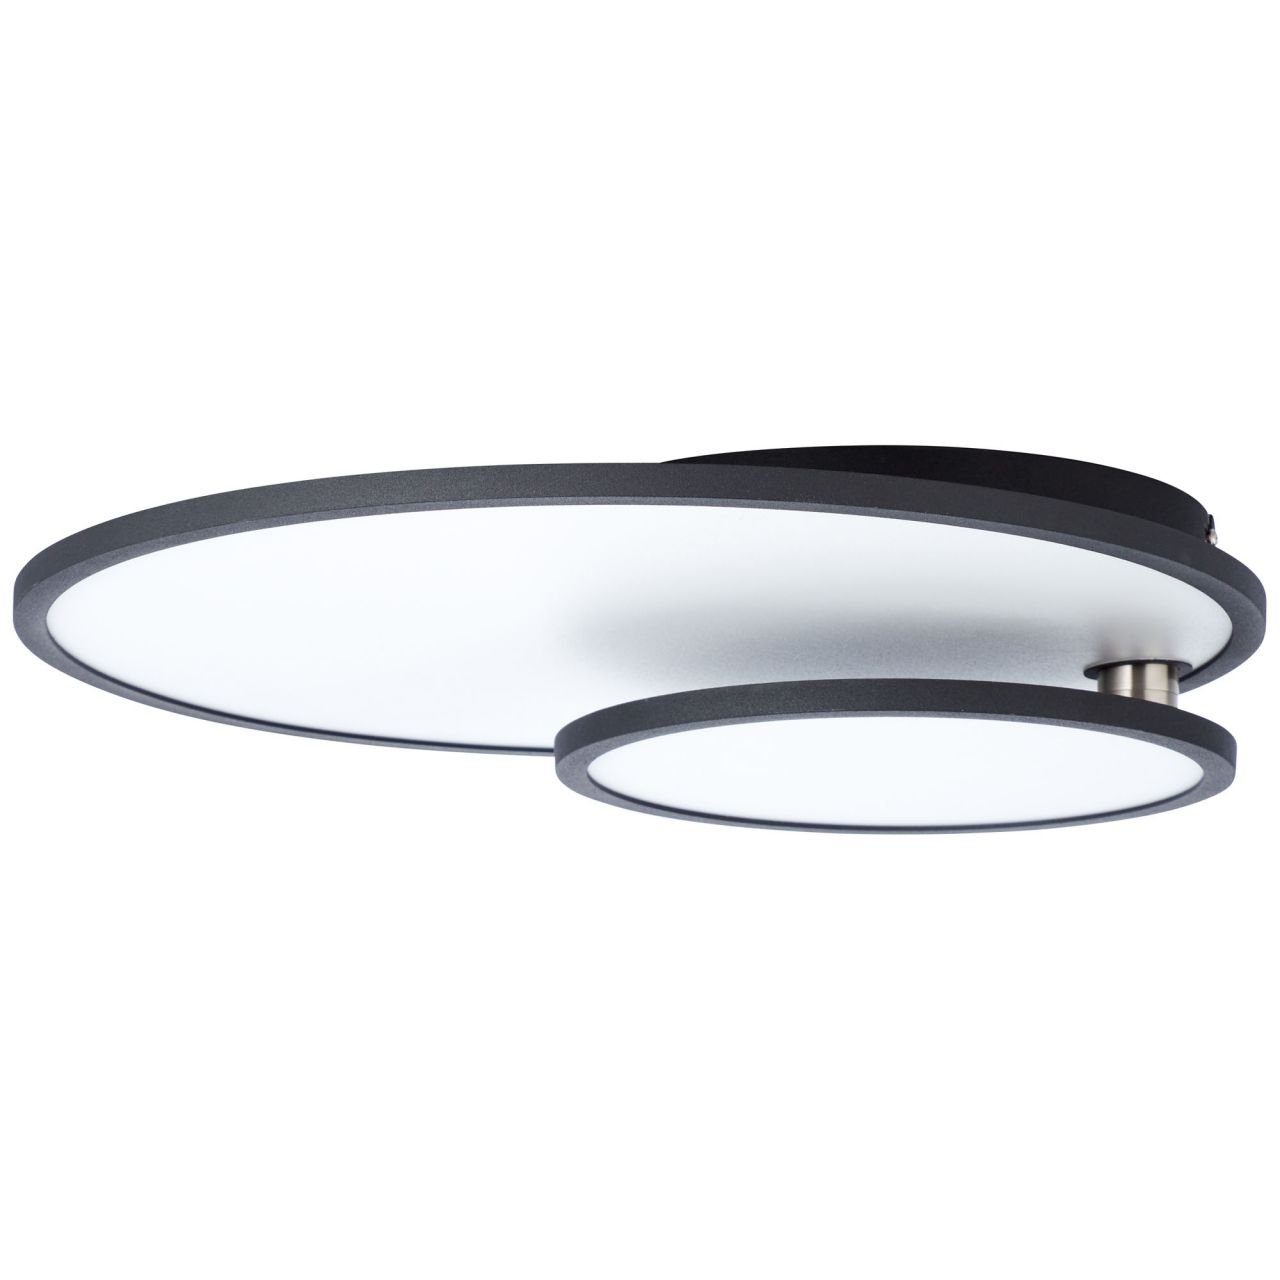 schwarz/weiß Brilliant Bility Lampe 3000K, easyDim Aufbauleuchte LED Bility, Deckenaufbau-Paneel 1x 61x45cm